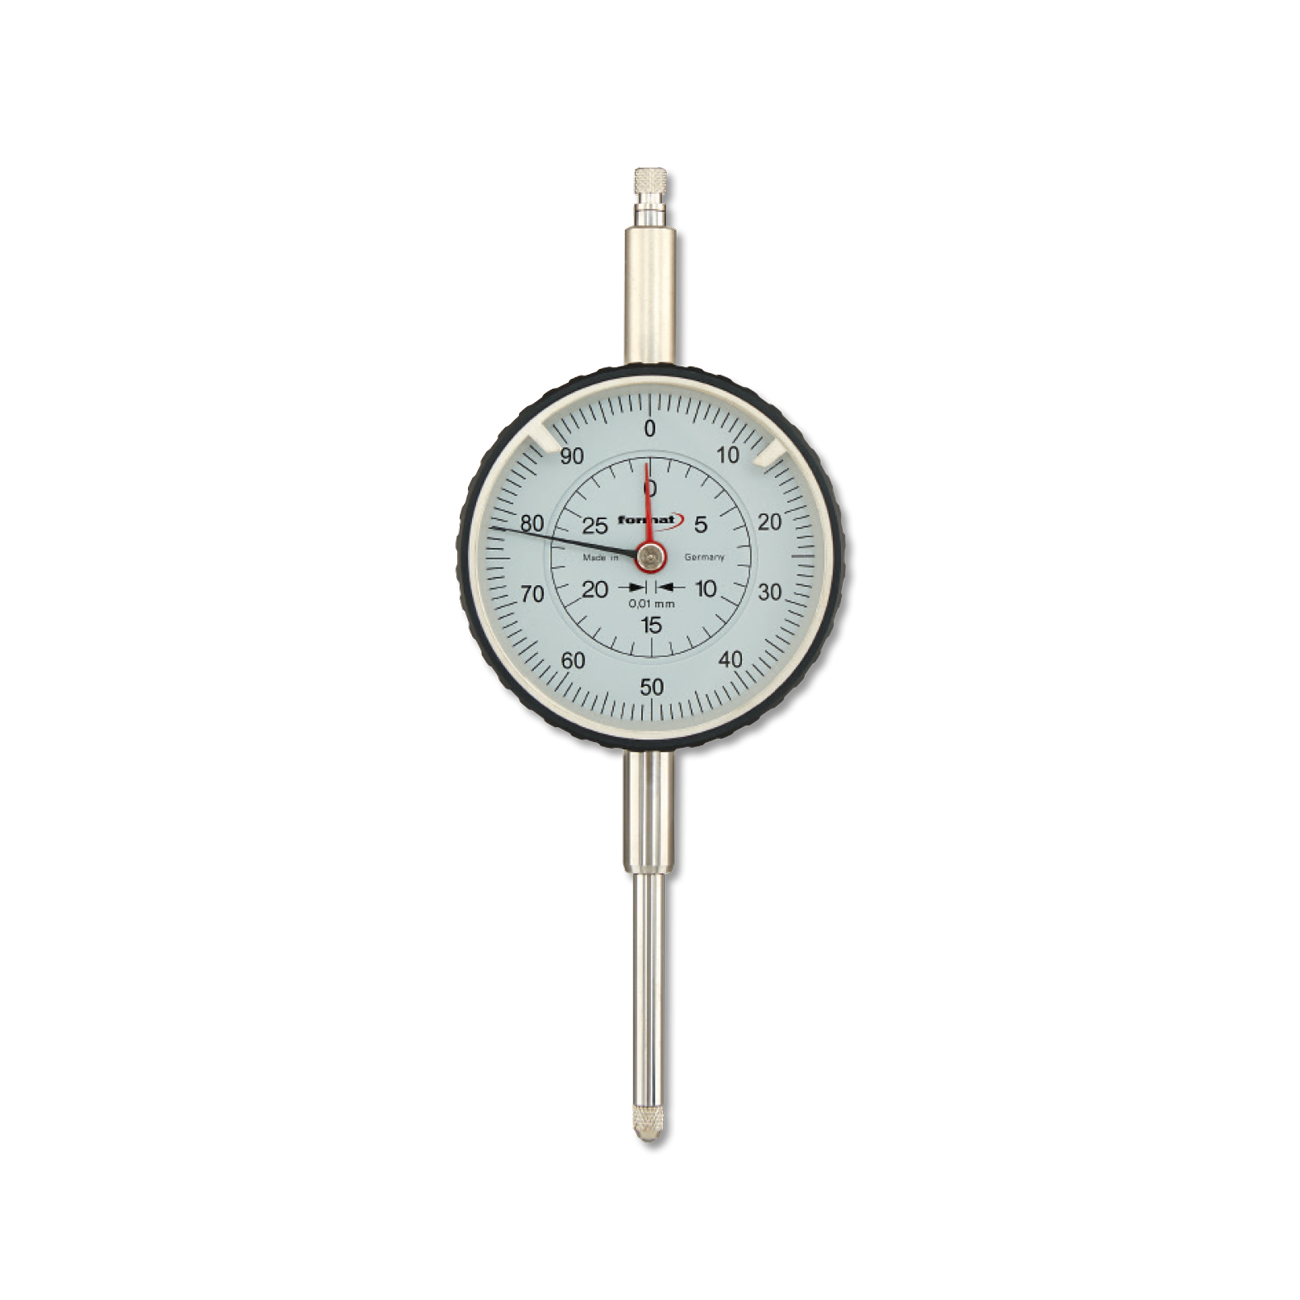 Ceas Comparator cu Domeniu de Masura Extins, Domeniu 30, Precizie 0.01, Diametru Cadran 58, 1 Mm/rotatie Completa